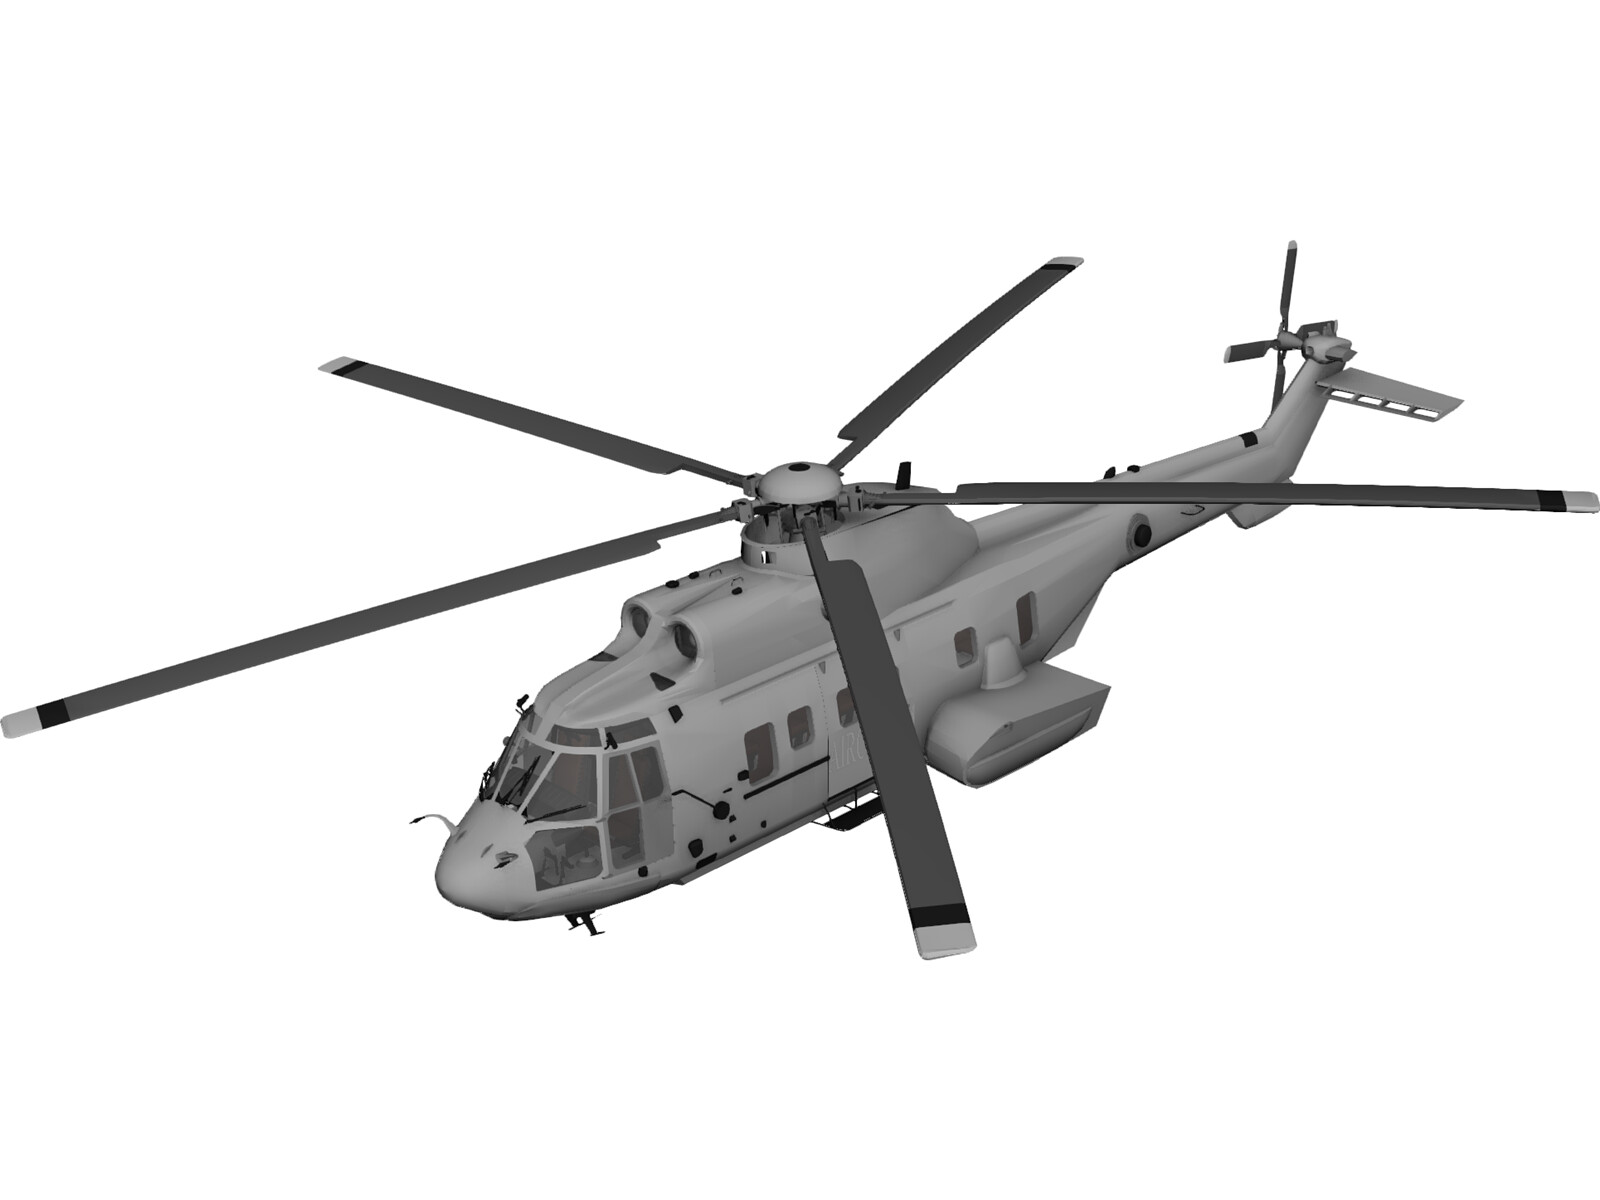 Eurocopter Ec225 Super Puma Wallpapers